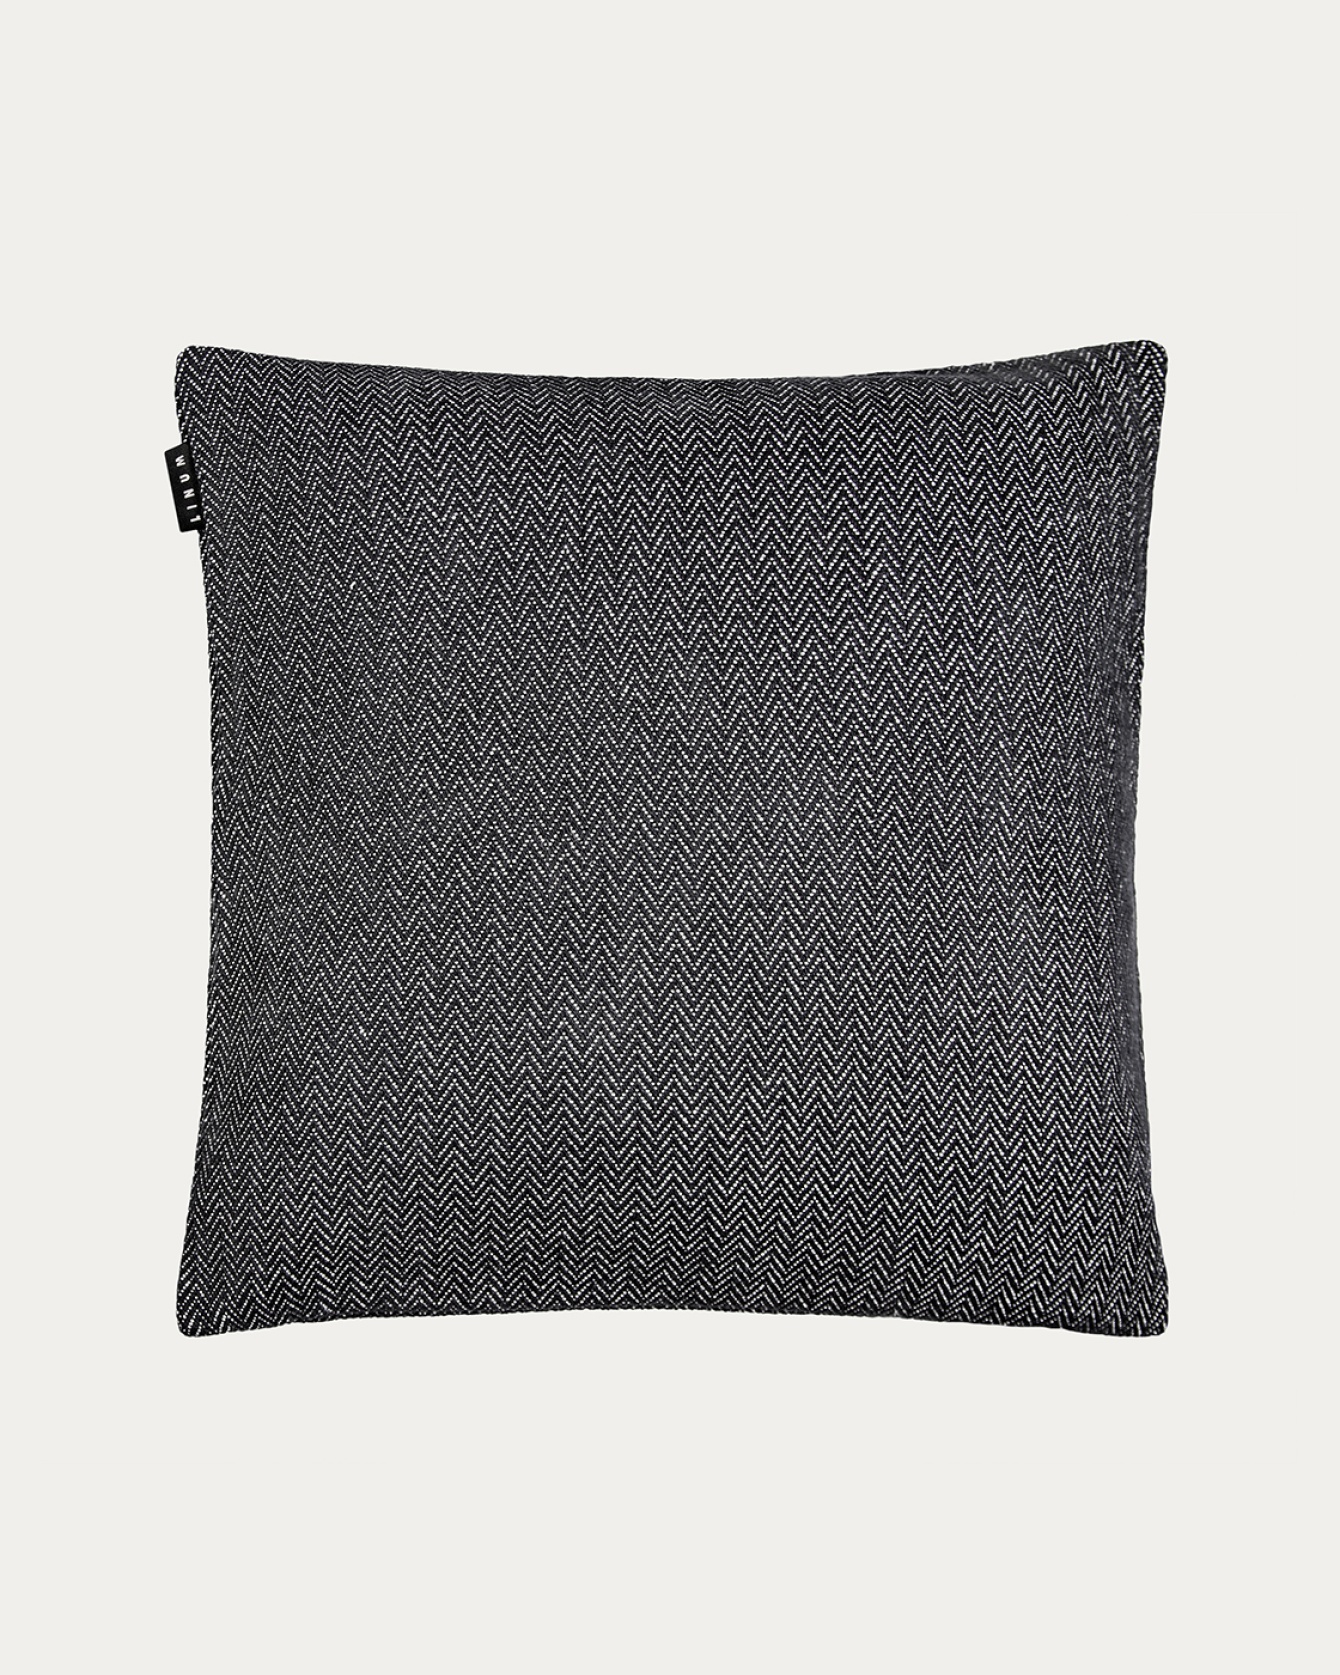 Produktbild schwarz SHEPARD Kissenhülle aus weicher Baumwolle mit dezentem Fischgrätmuster von LINUM DESIGN. Größe 50x50 cm.